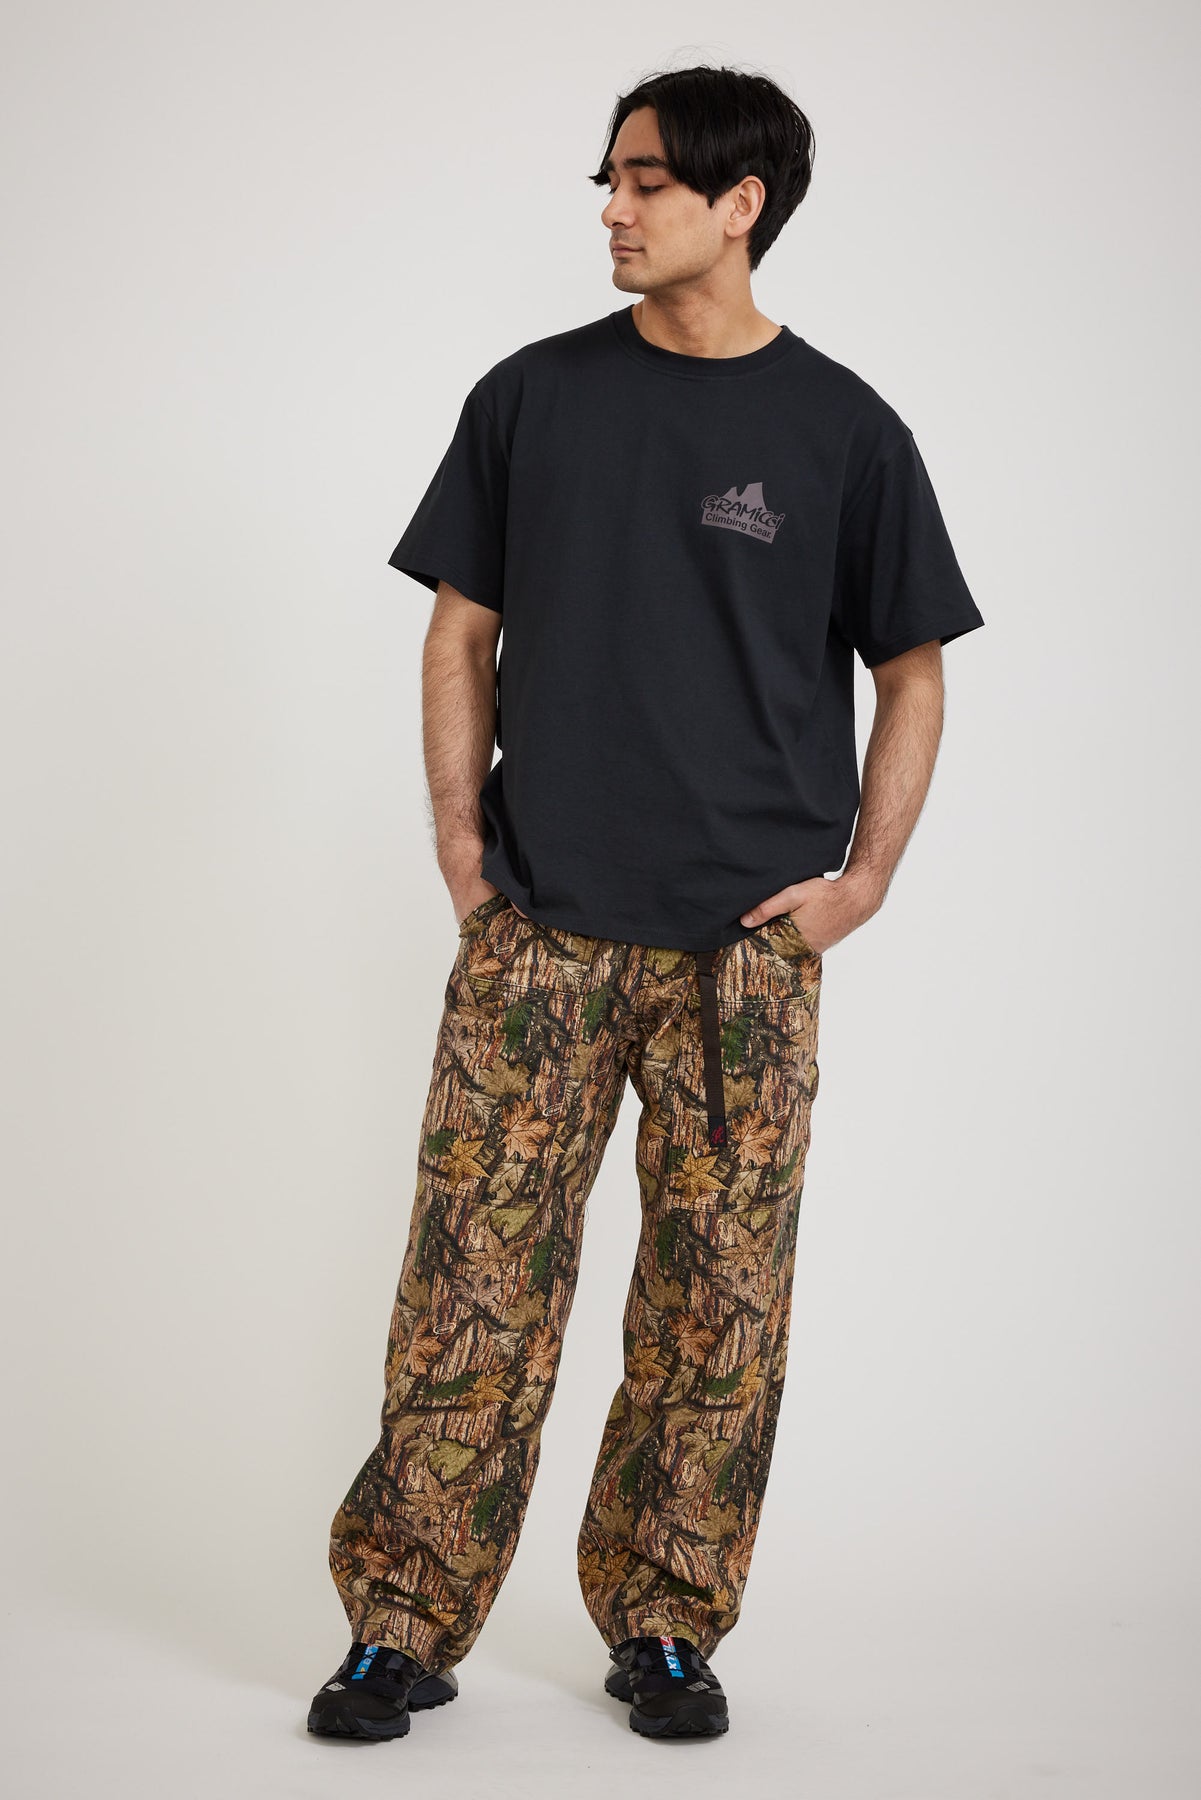 Gramicci Canvas Equipment Pants - Leaf Camo - XL - Men